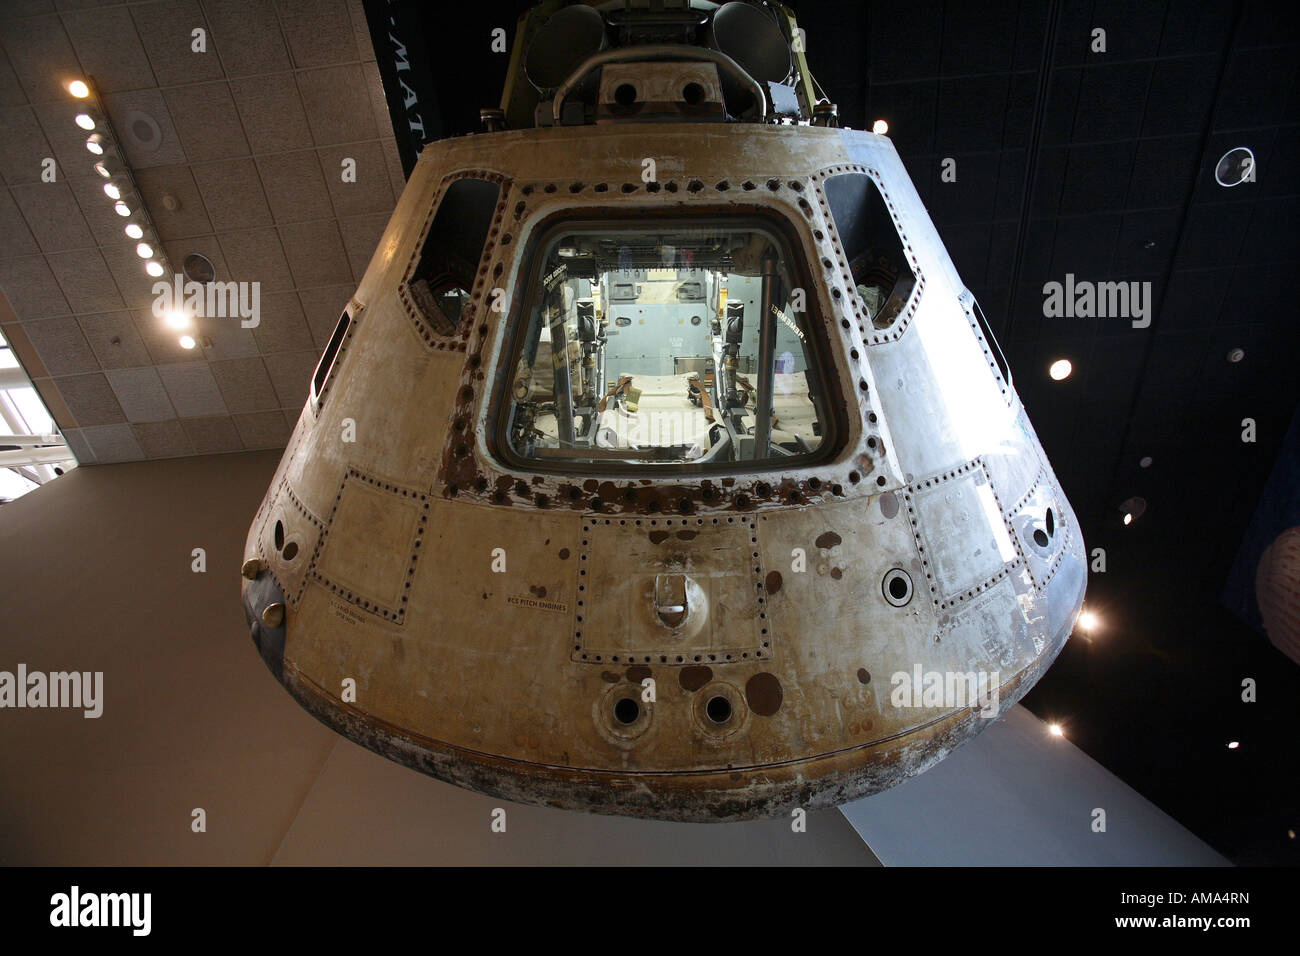 Module de commande Apollo 11 au National Air and Space Museum de Washington DC Banque D'Images